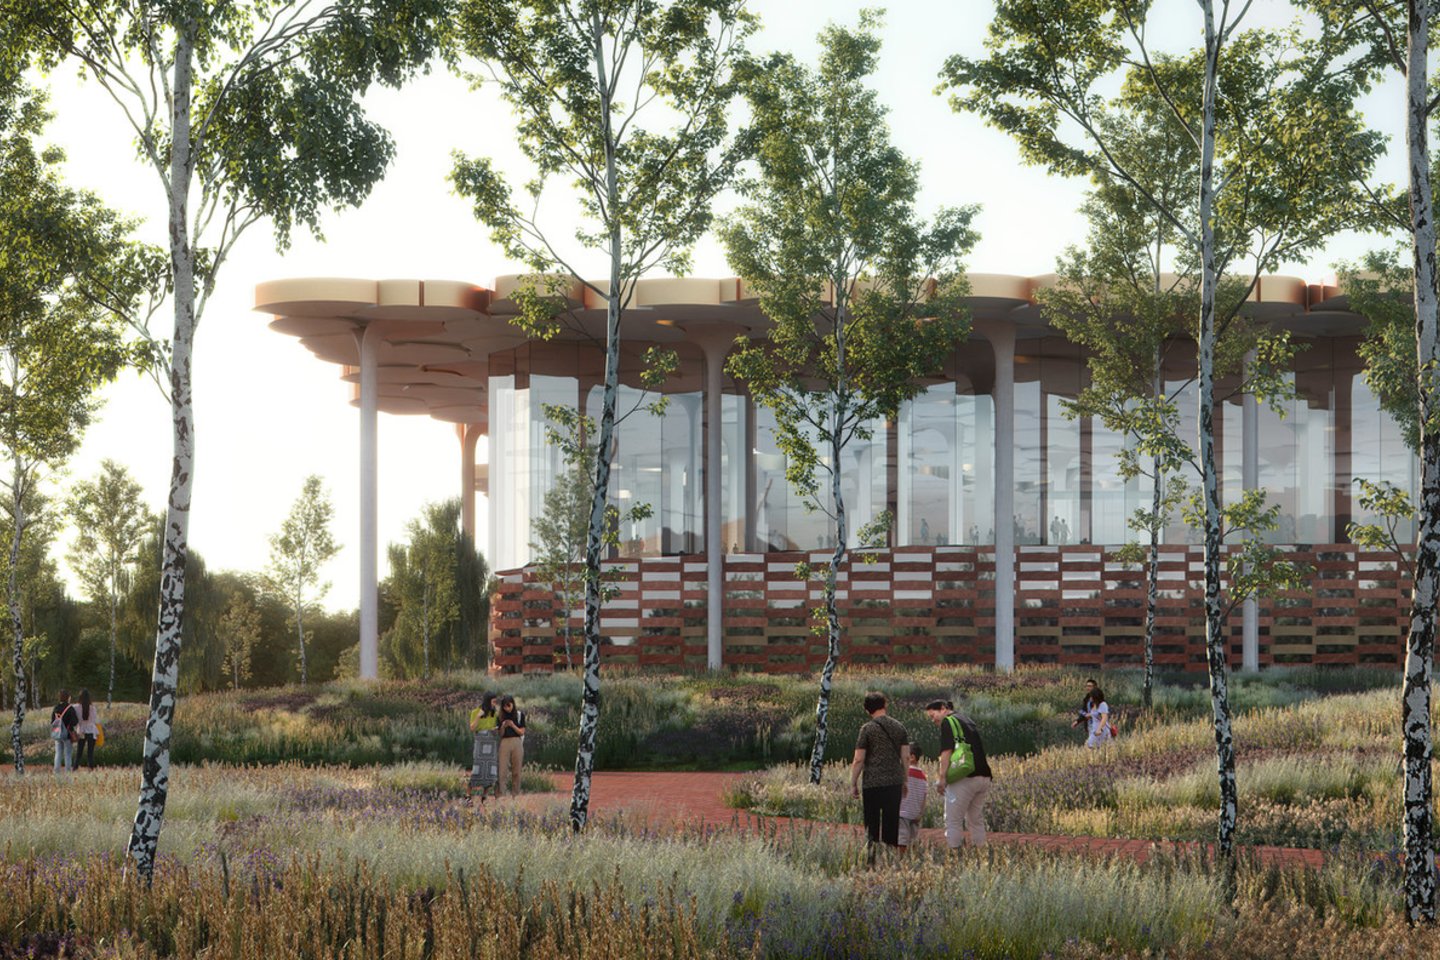 Vienas įdomiausių būsimų „Snohetta“ projektų – „Sub-Center“ biblioteka Pekine, kuri suprojektuota taip, kad lankytojai jaustųsi atsidūrę miško tankmėje.<br>Plomp / Snohetta / archdaily.com nuotr.